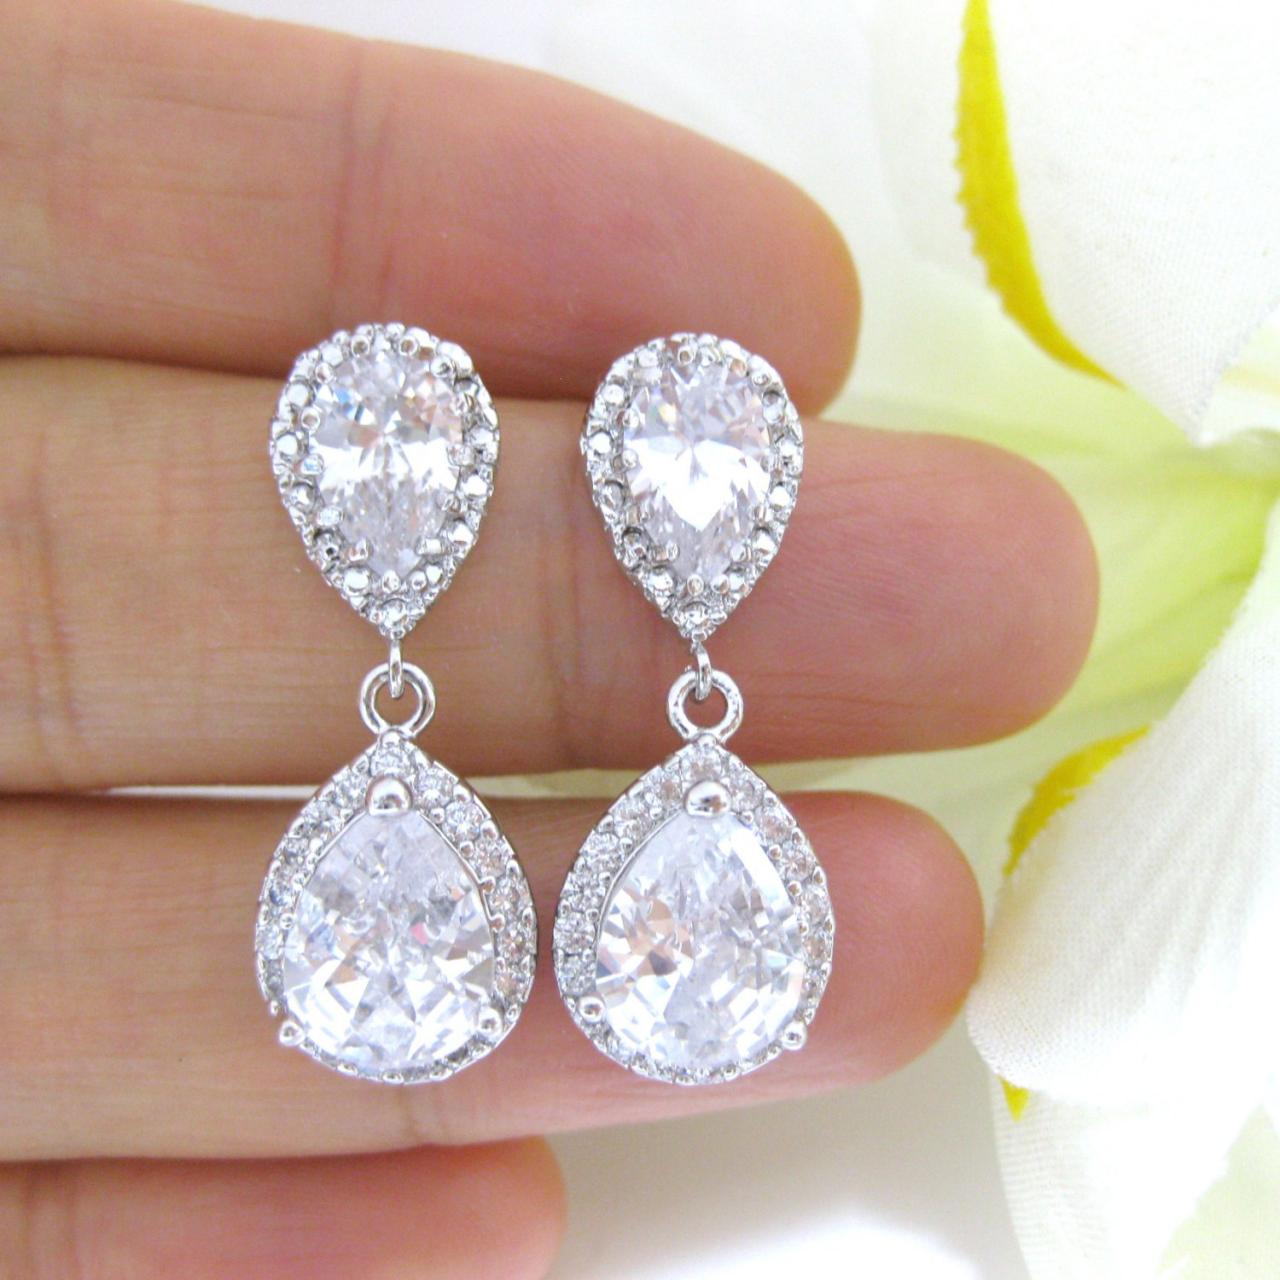 Bridal Teardrop Earrings Wedding Jewelry Lux Cubic Zirconia Earrings Crystal Teardrop Earrings Bridesmaid Gift Dangle Drop Earrings (e125)